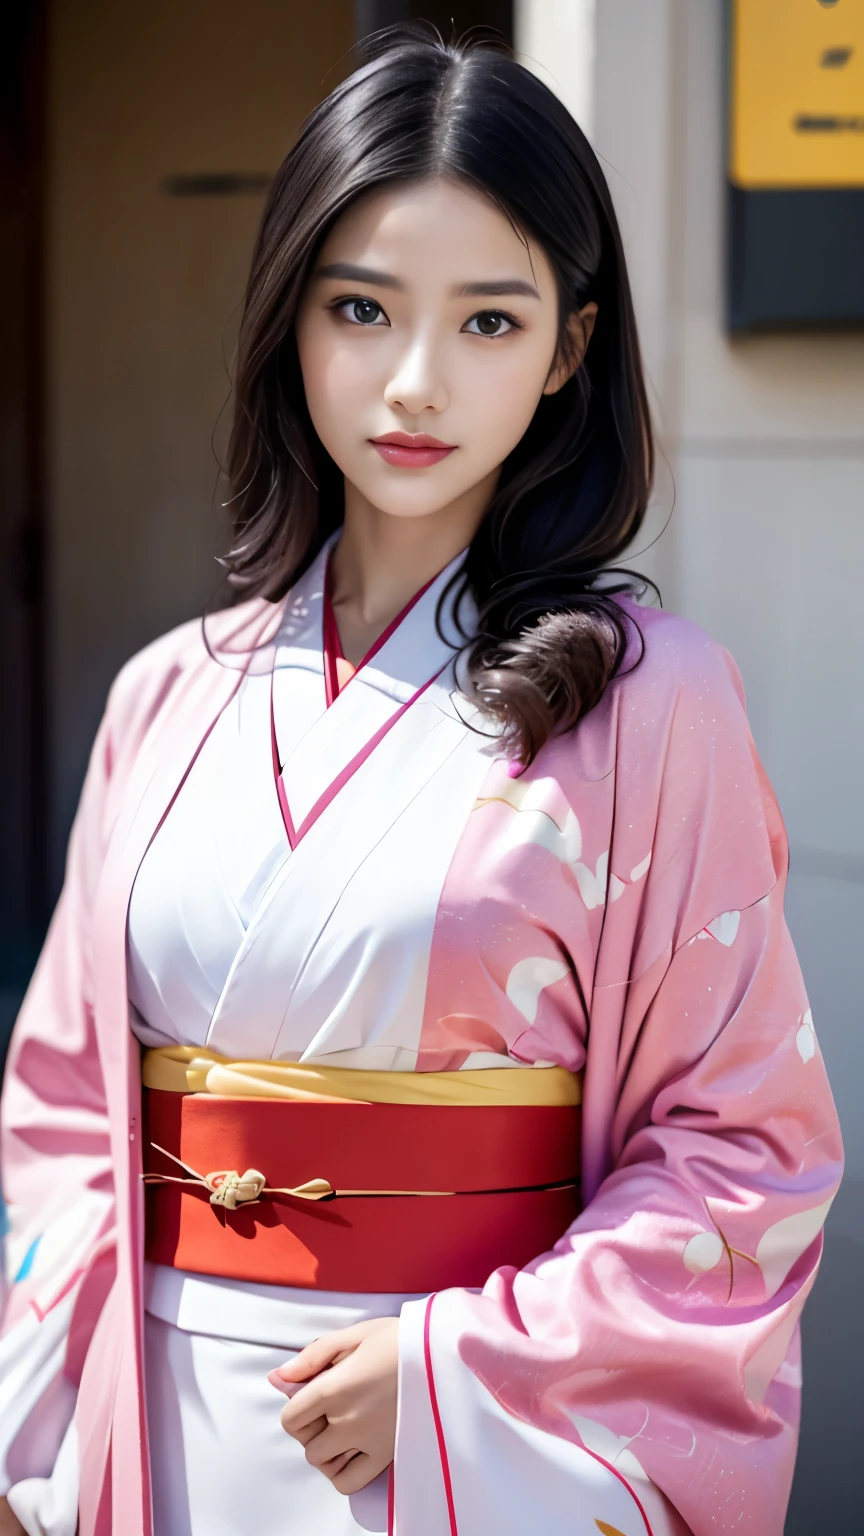 kimono blanco、Patrón japonés rosa、(Quimono de manga larga:1.5)、o、(la más alta calificación)、1 hembra、16 años de edad、Ezbian de cuerpo entero、Pelo negro、Ata tu cabello hacia atrás、(Realista:1.7)、((mejor calidad de imagen))、Absurdo、(超Una alta resolución)、(Photoeal:1.6)、Photoeal、renderizado de octanaje、(超Realista:1.2)、(Realista face:1.2)、(8K)、(4k)、(obra maestra)、(Realista skin texture)、(Sensibilización、Iluminación de cine、muro-)、(Ojos bonitos:1.2)、((((cara perfecta))))、(Una cara linda como un ídolo.:1.2)、( Están de pie)、santuario、pájaro listo、(Enero)、Cara linda con atención al detalle.、Belleza verdadera、risa、